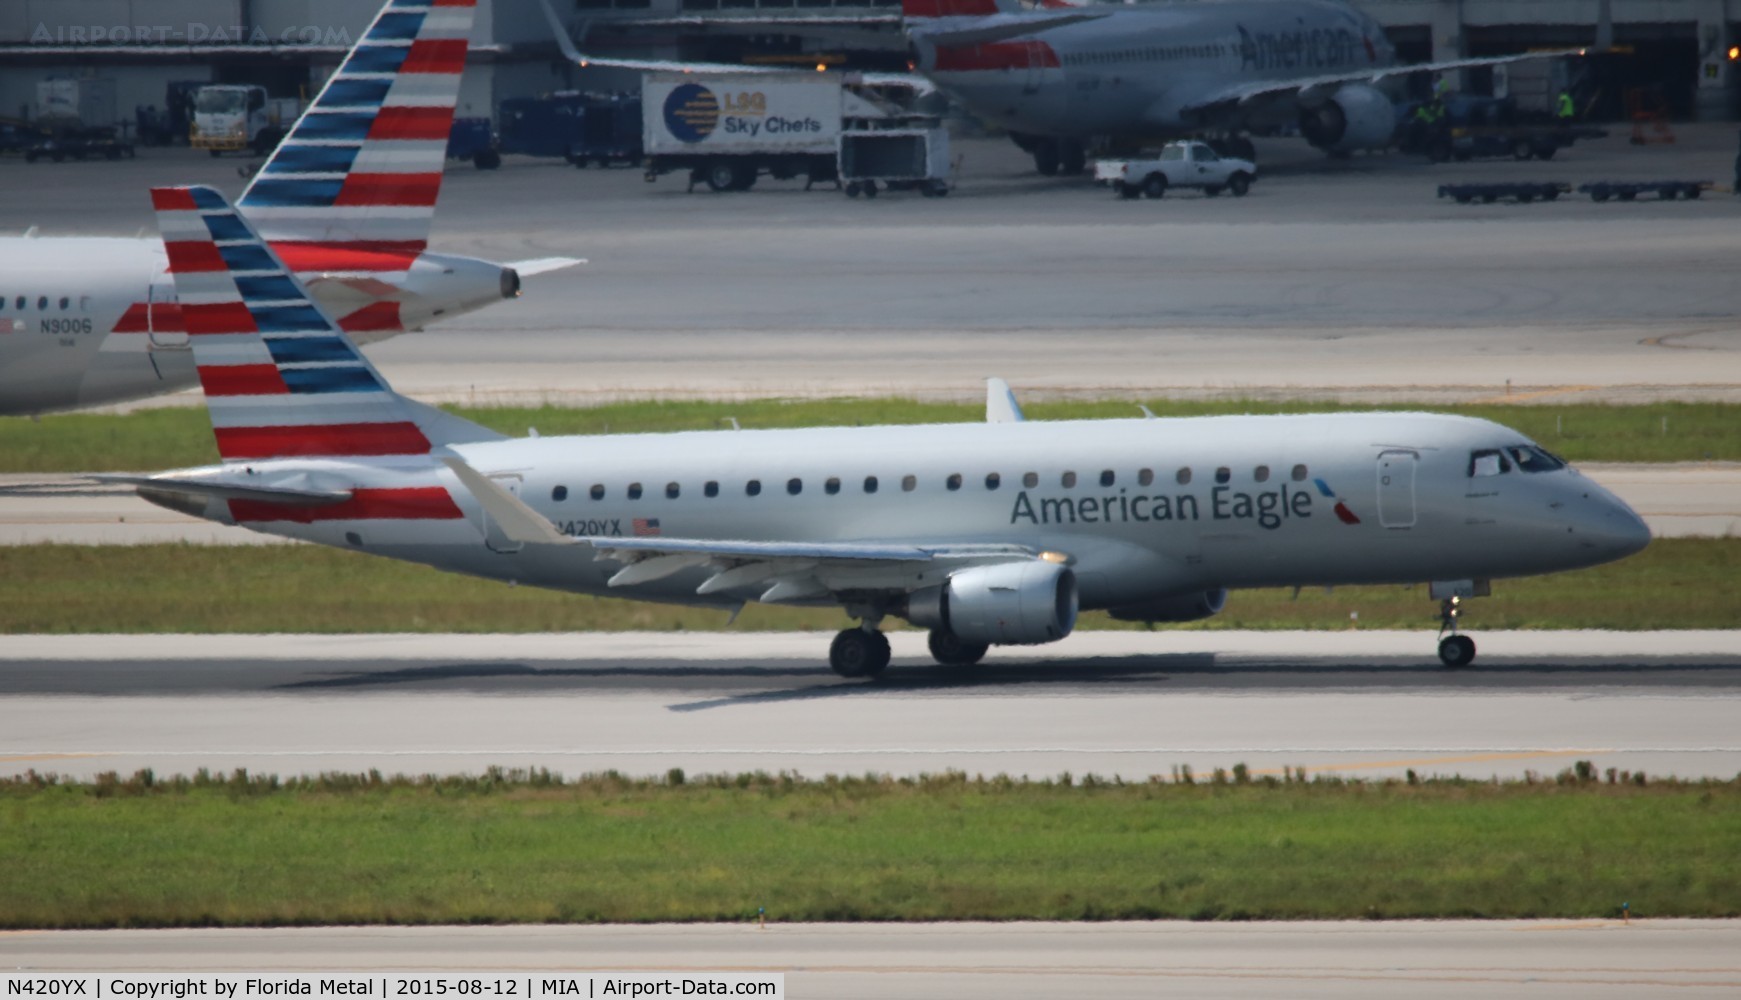 N420YX, 2014 Embraer 175LR (ERJ-170-200LR) C/N 17000385, American Eagle